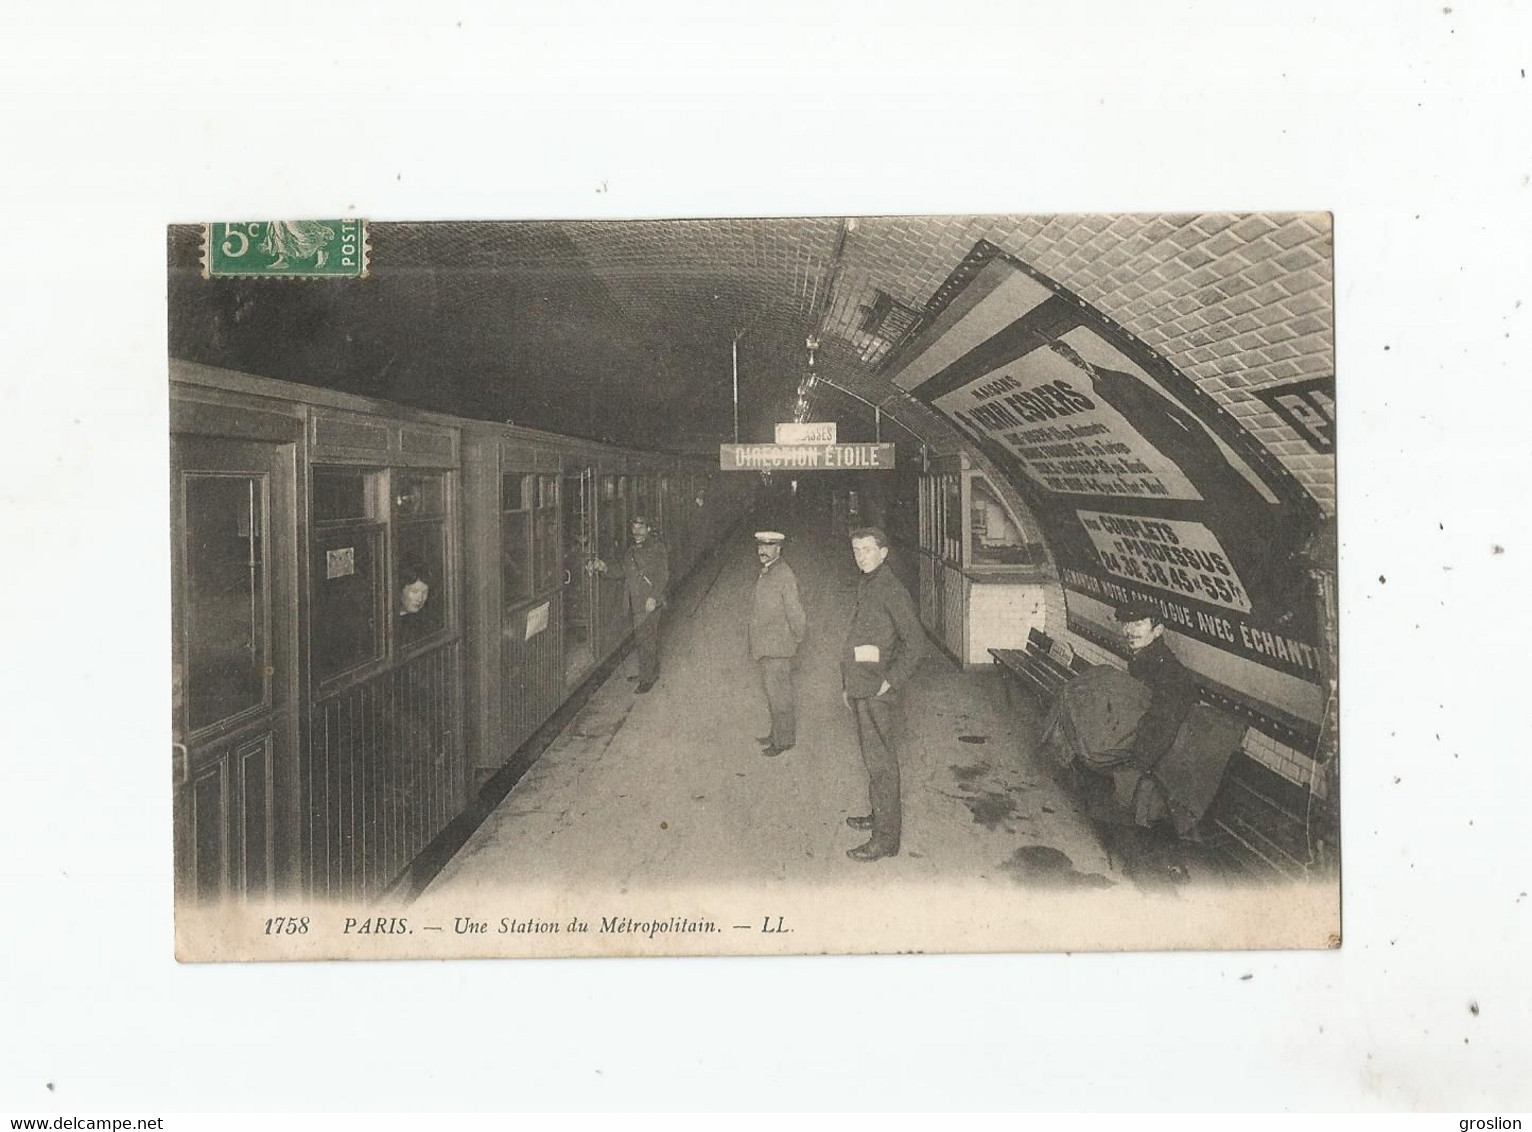 PARIS 1758 UNE STATION DU METROPOLITAINE 1912 - Stations, Underground